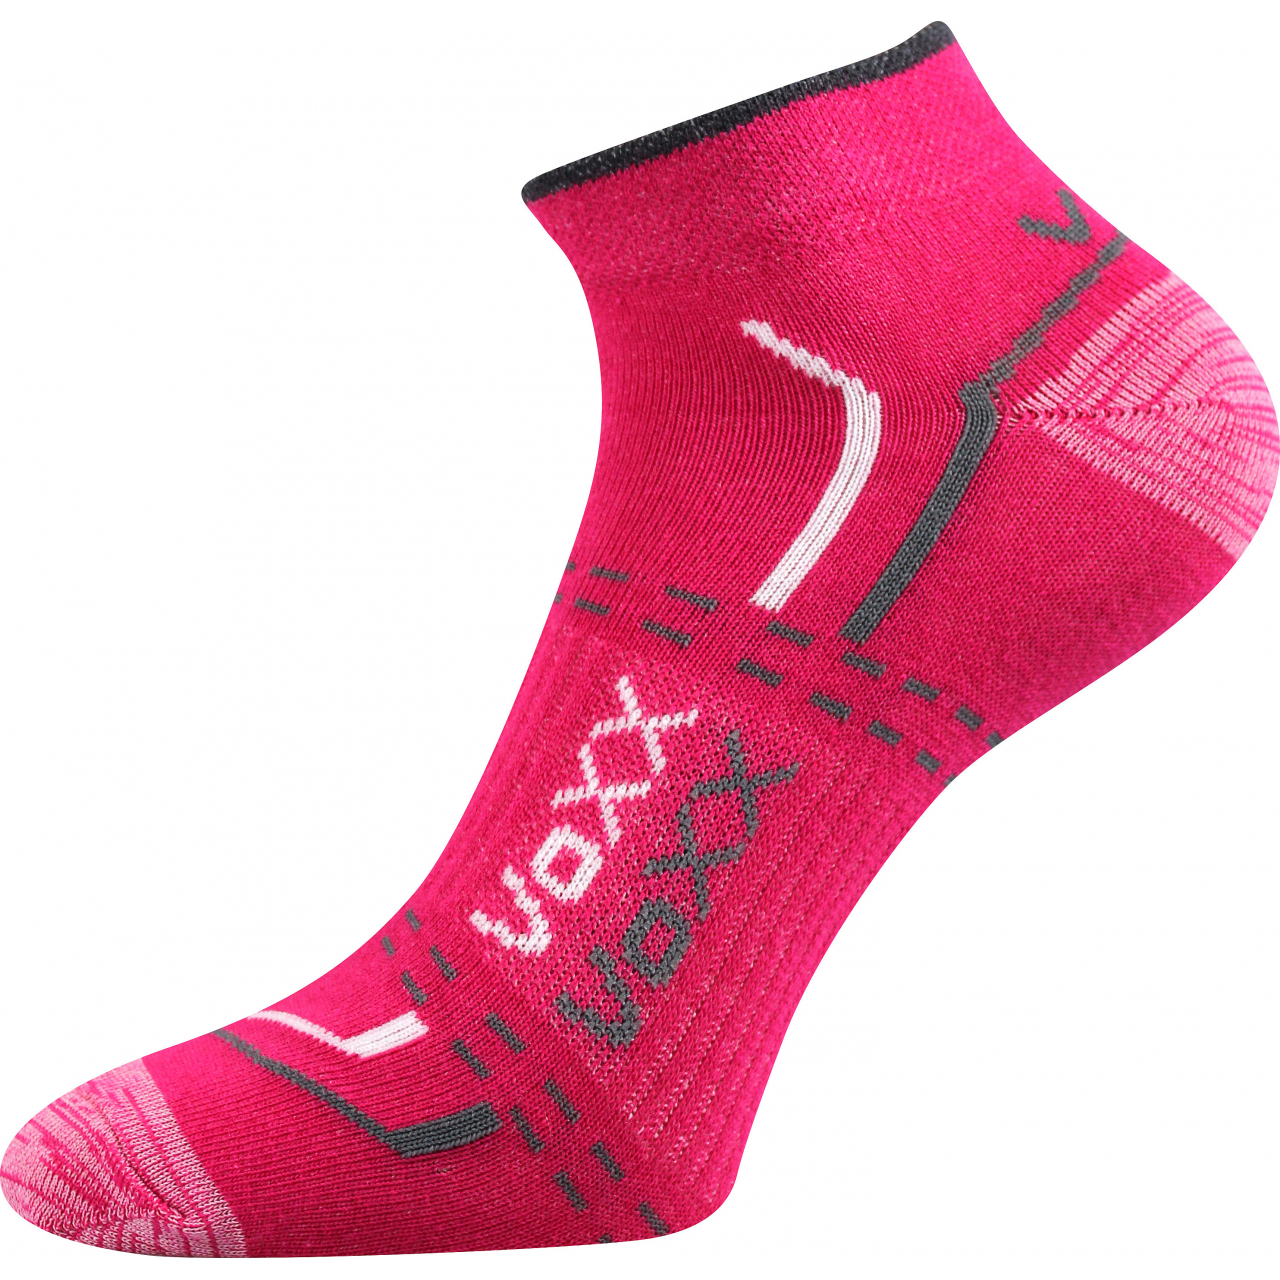 Ponožky unisex klasické Voxx Rex 11 - tmavě růžové, 39-42